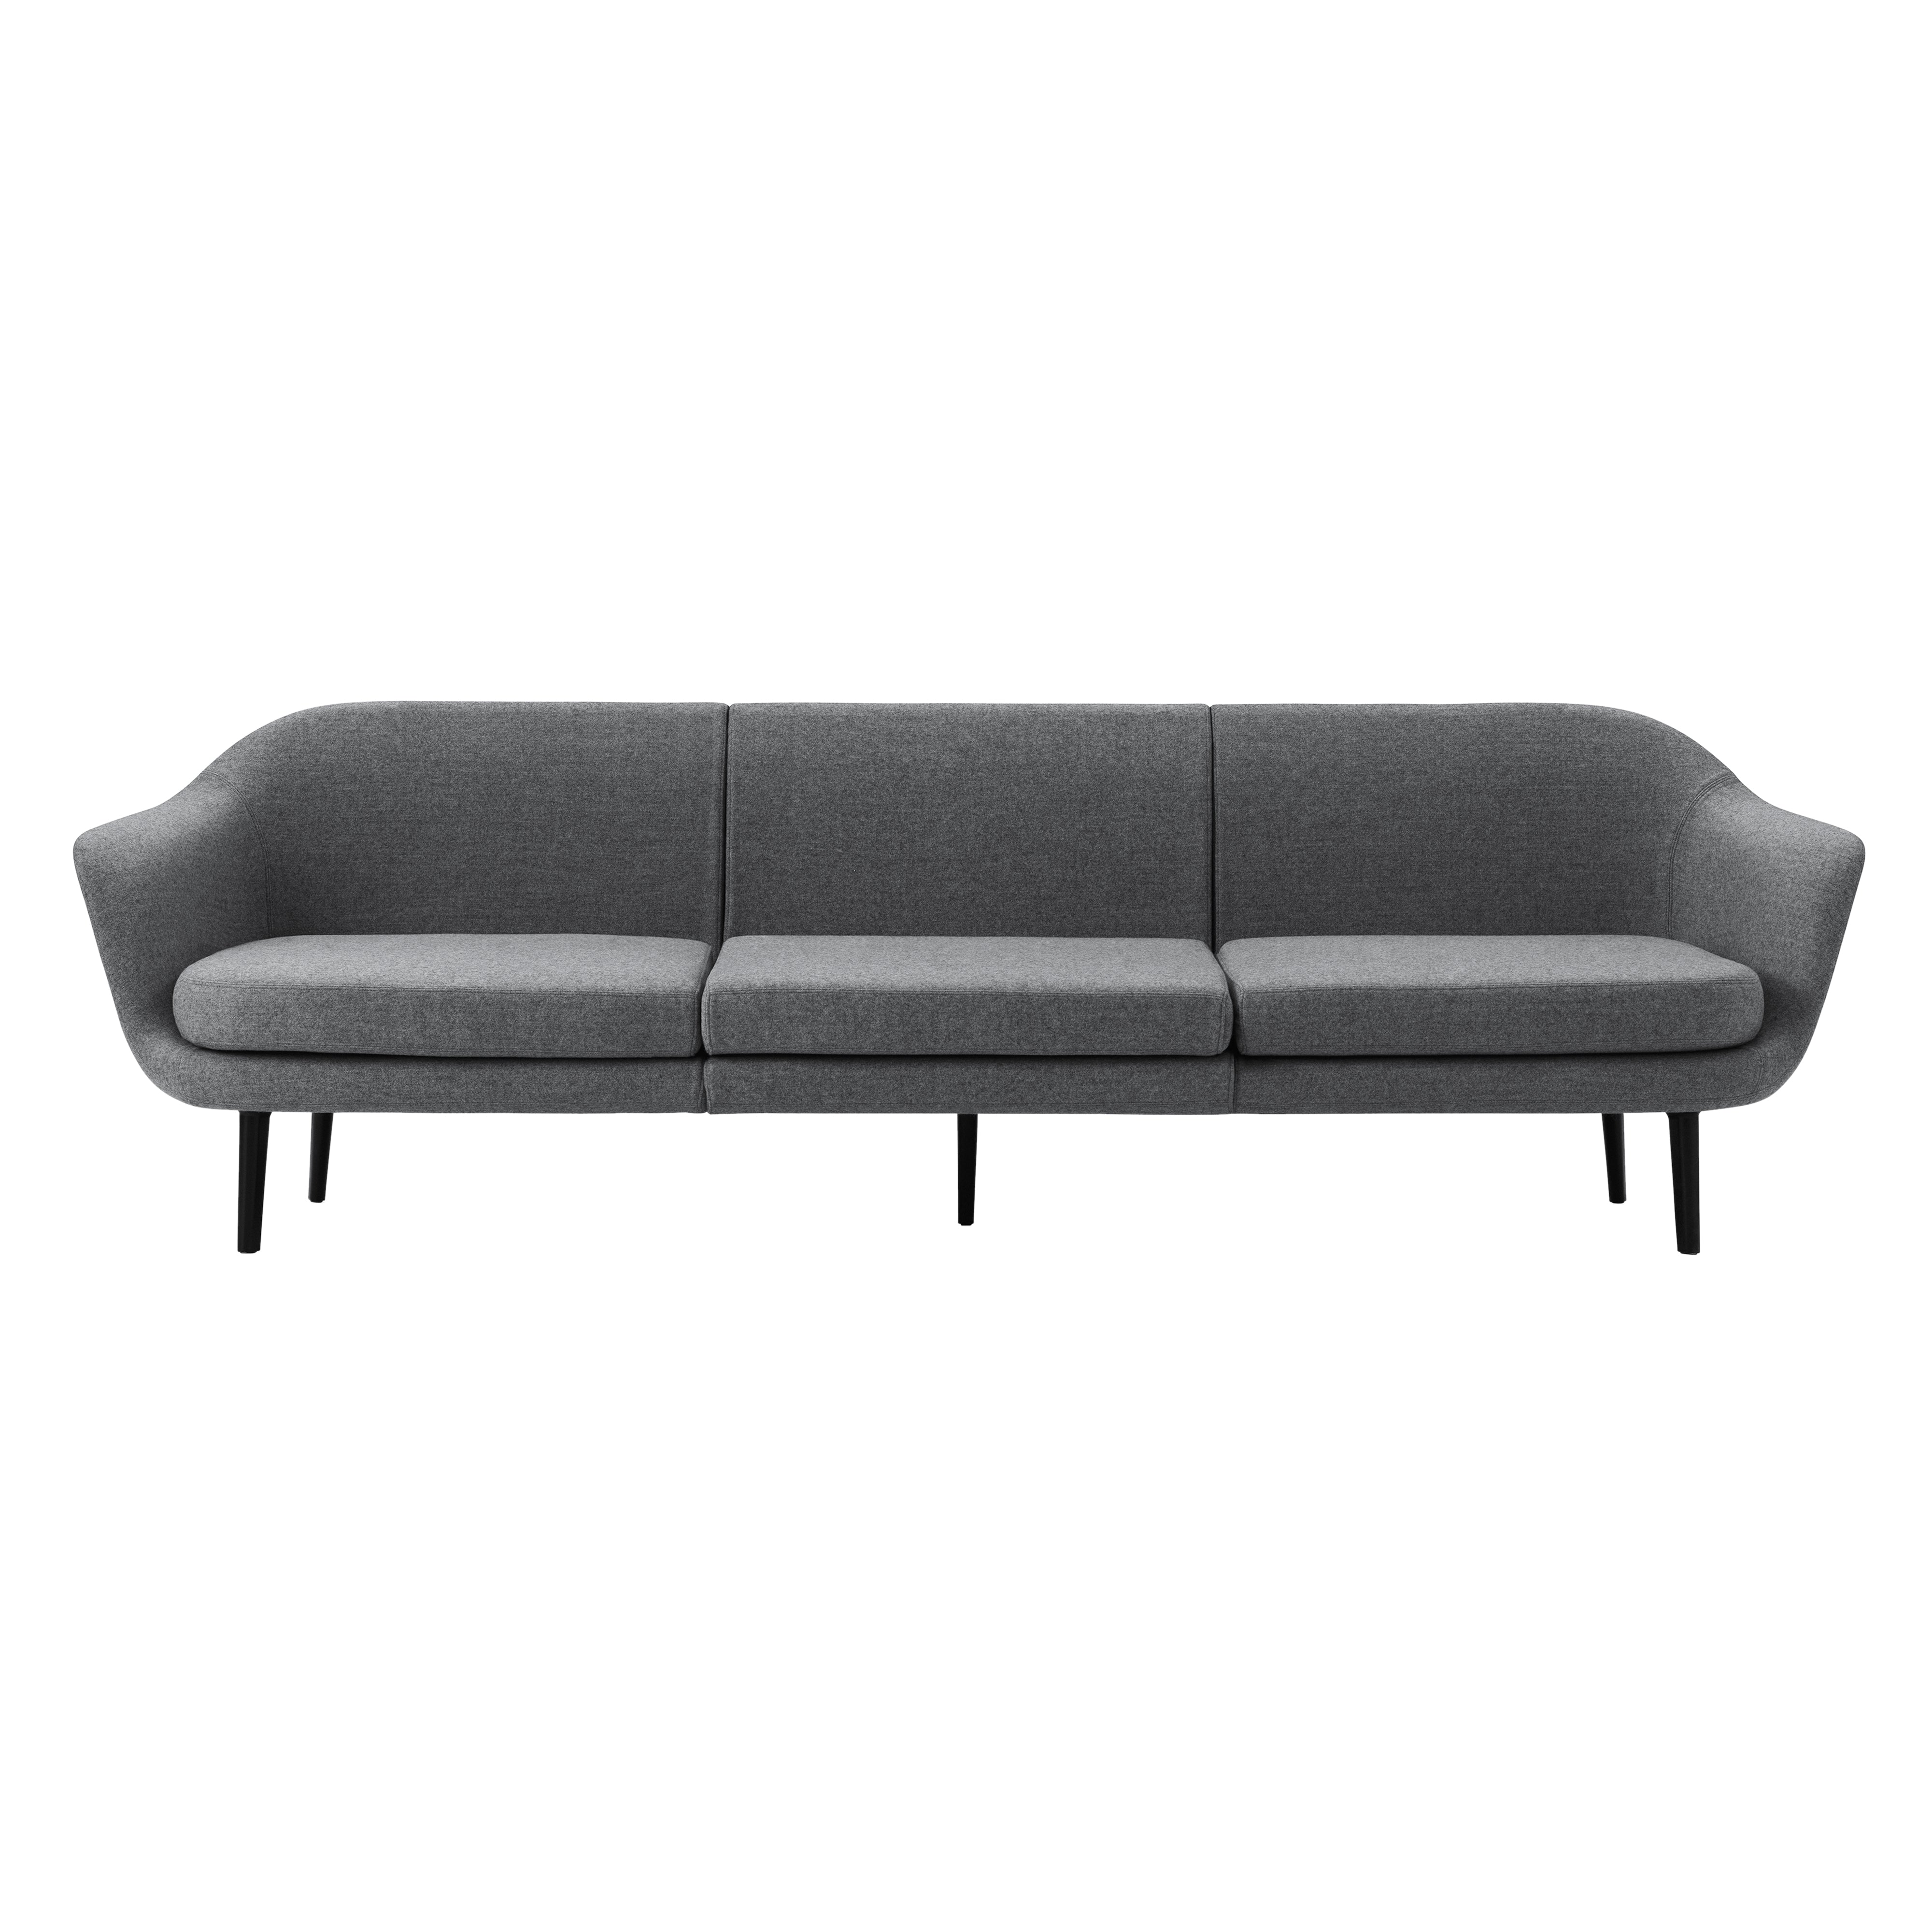 Sum Modular Sofa: Black Aluminum Base + Configuration 5